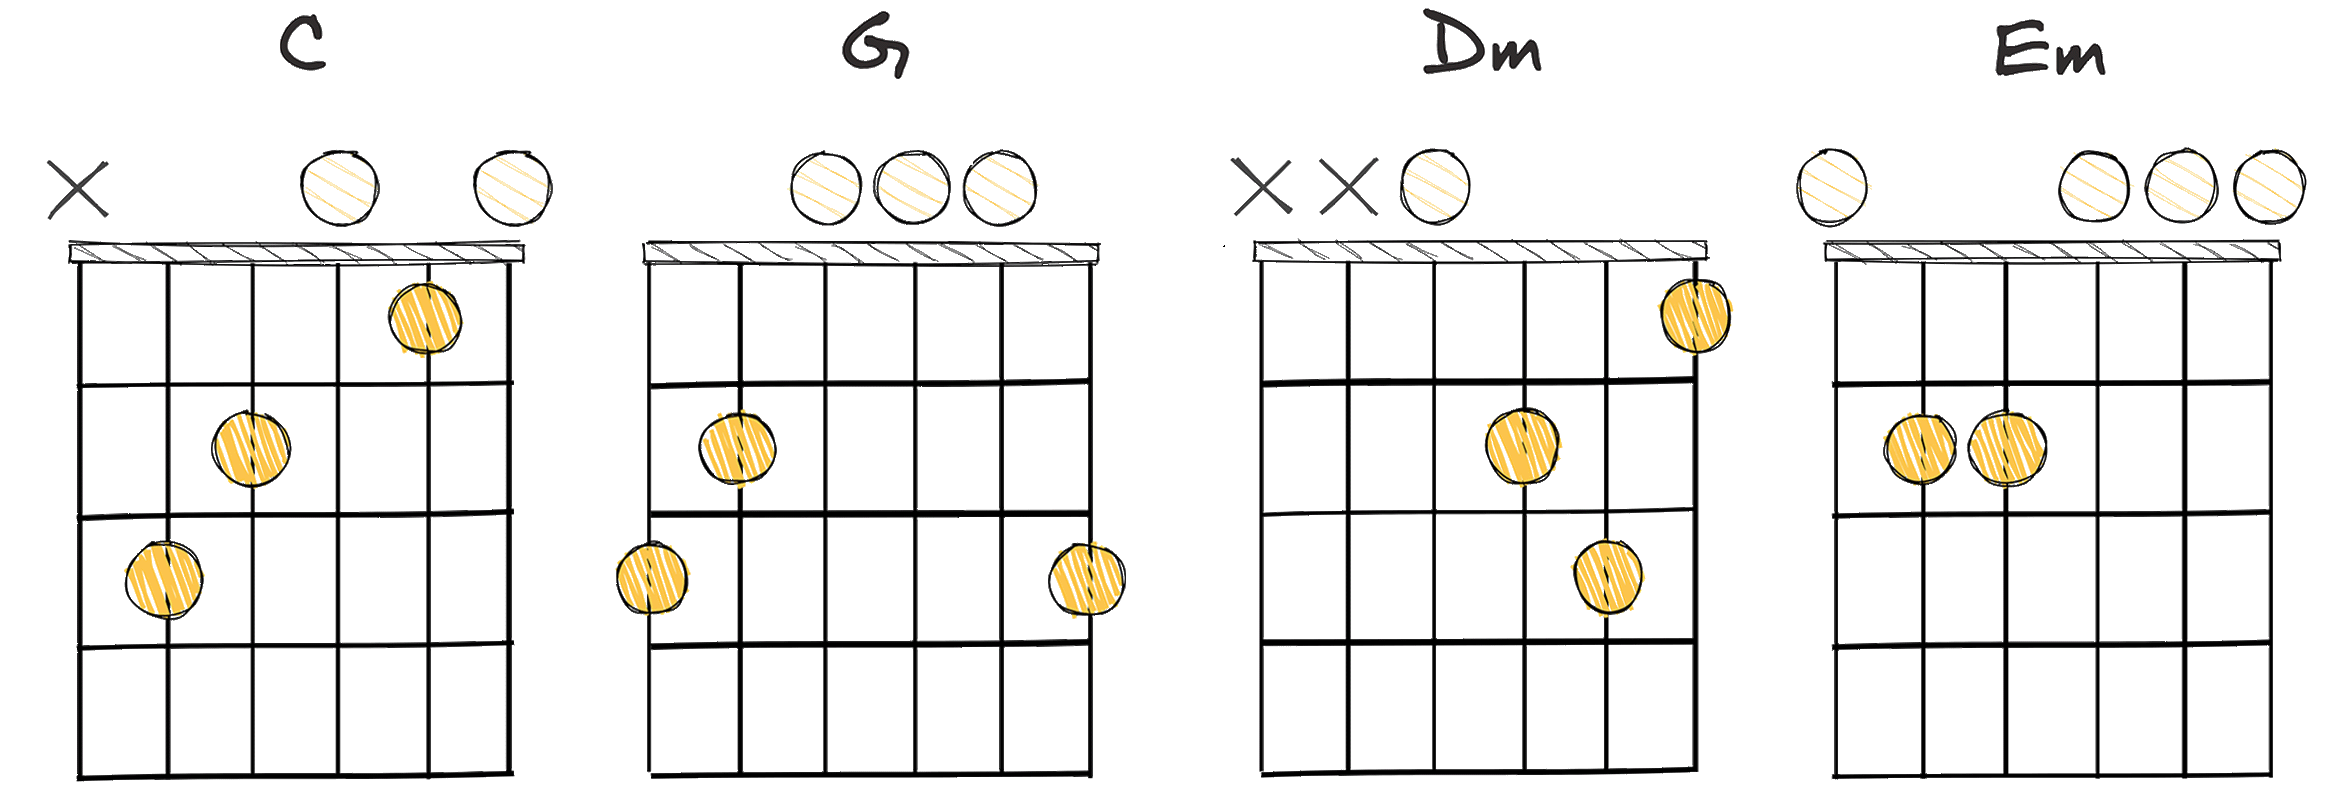 I-V-ii-iii (1-5-2-3) chords diagram